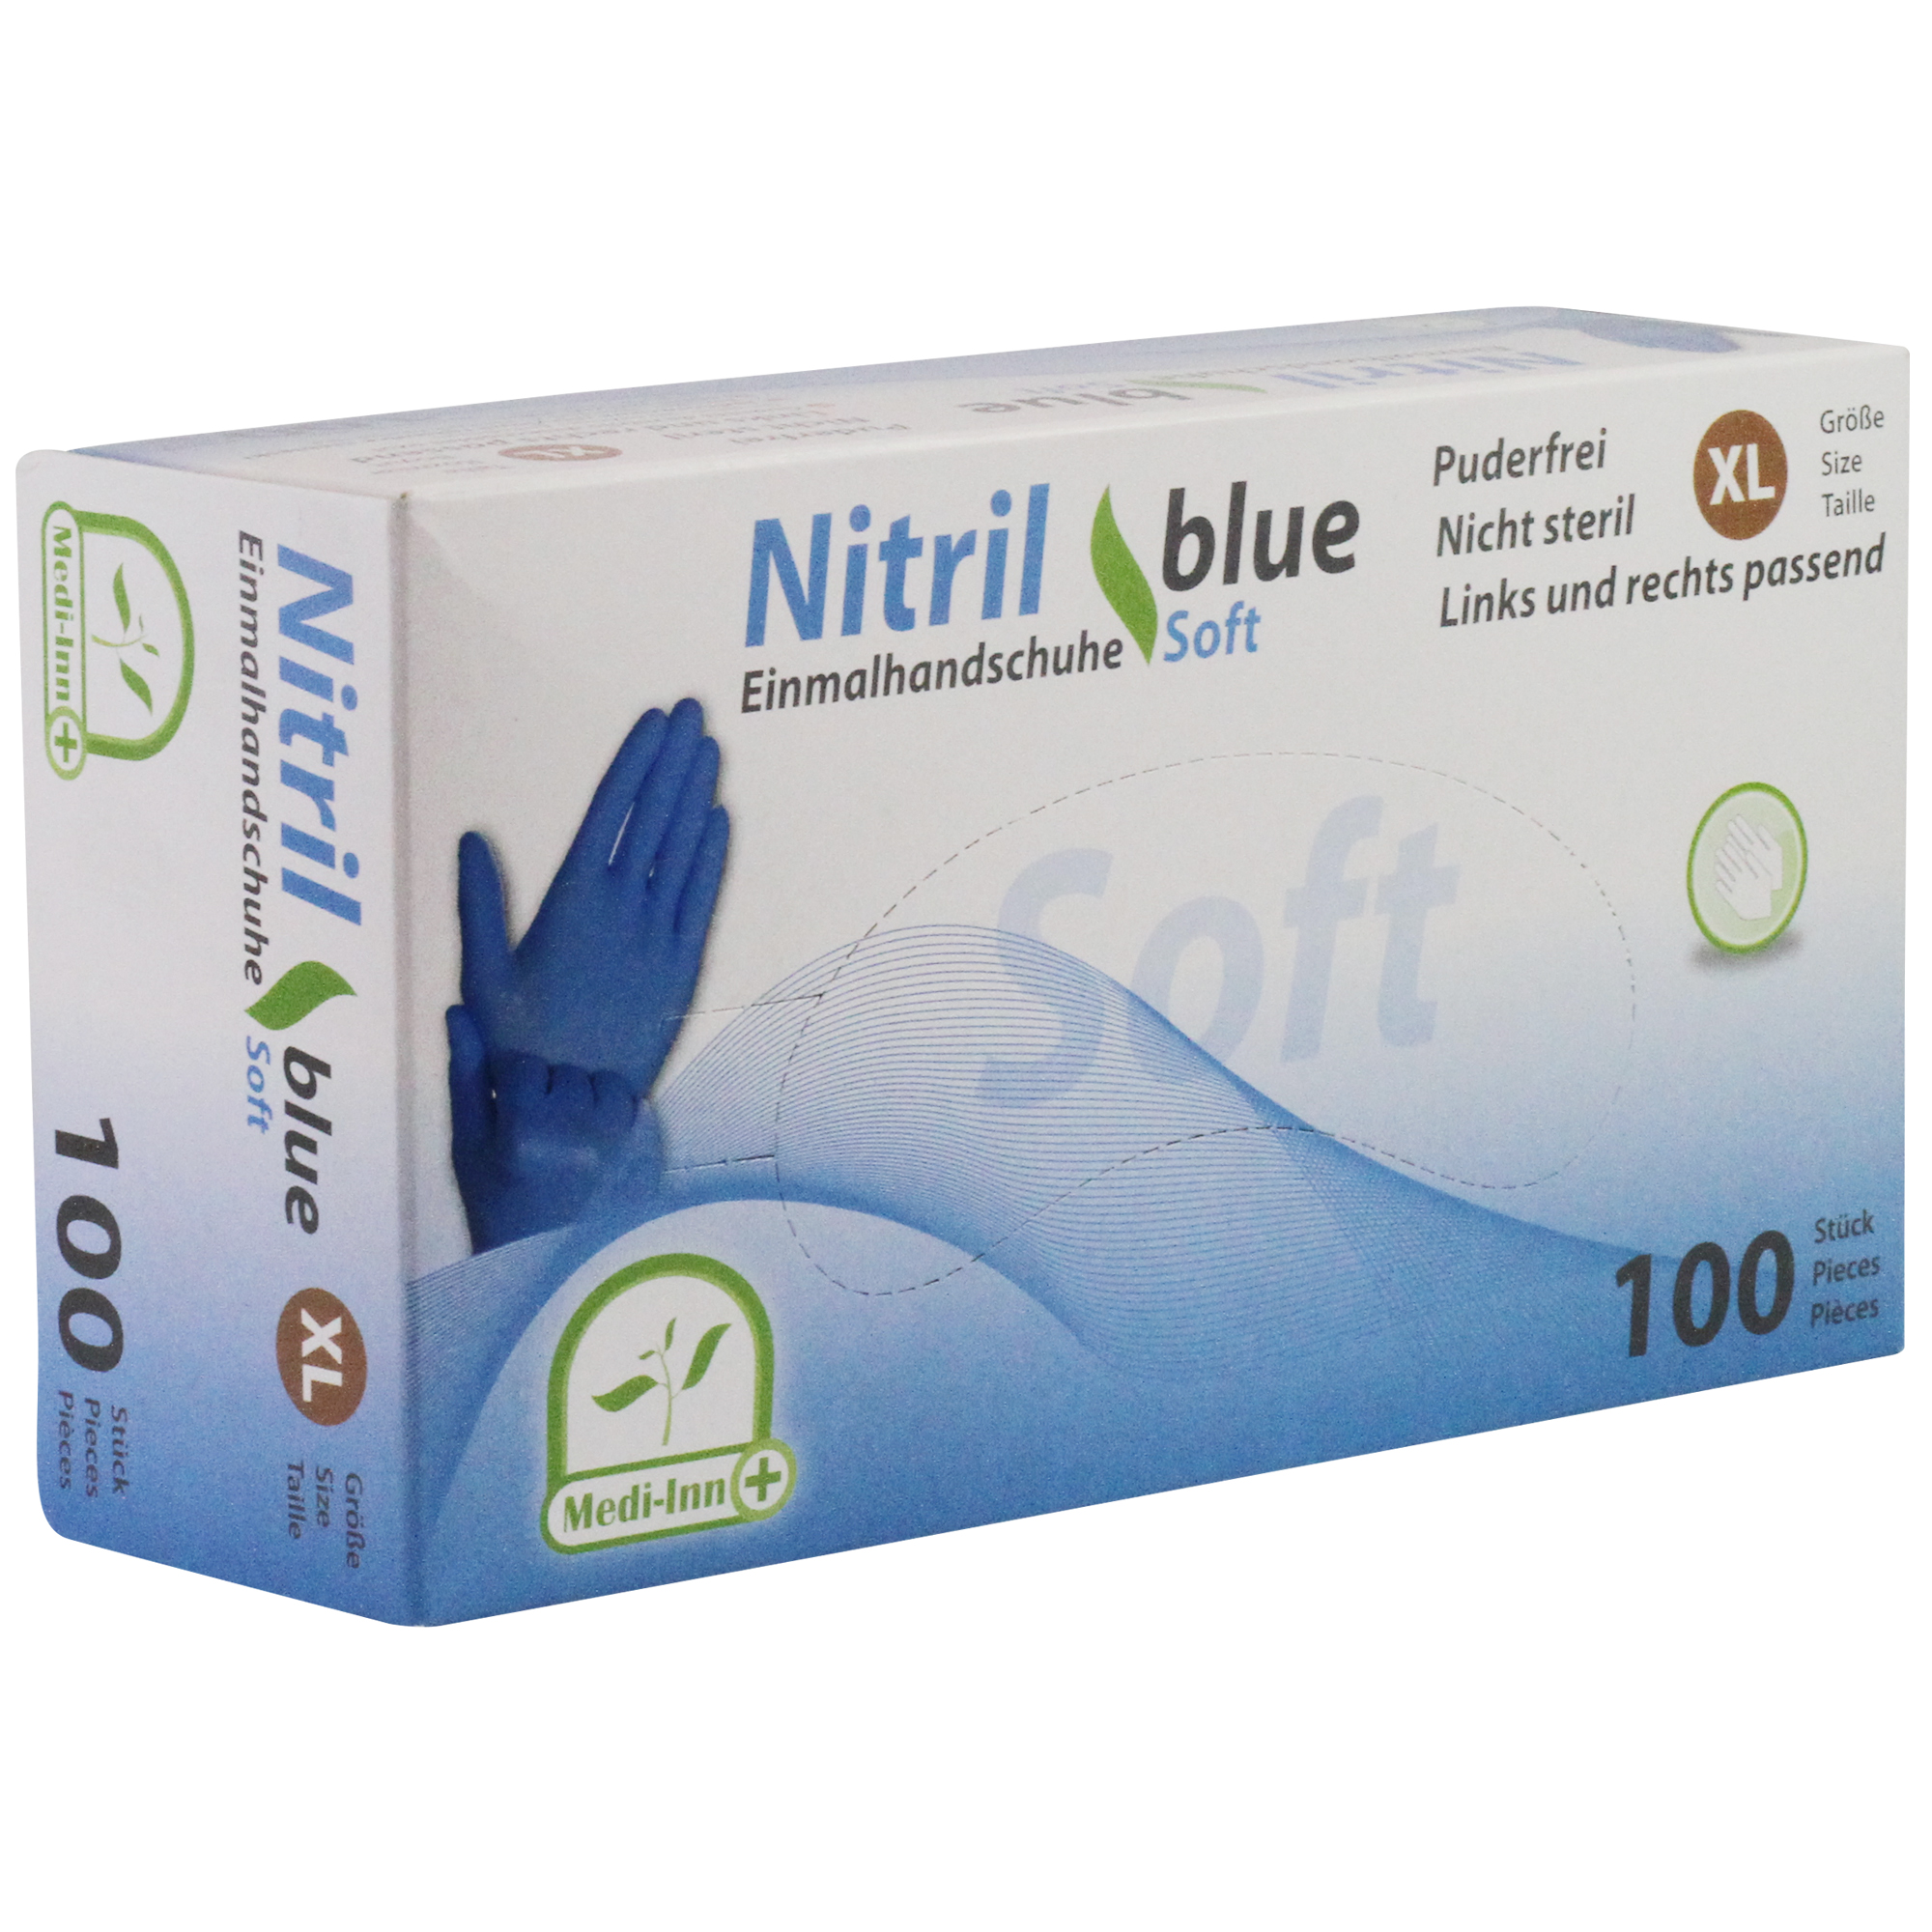 Medi-Inn Nitril Einmalhandschuhe blue soft